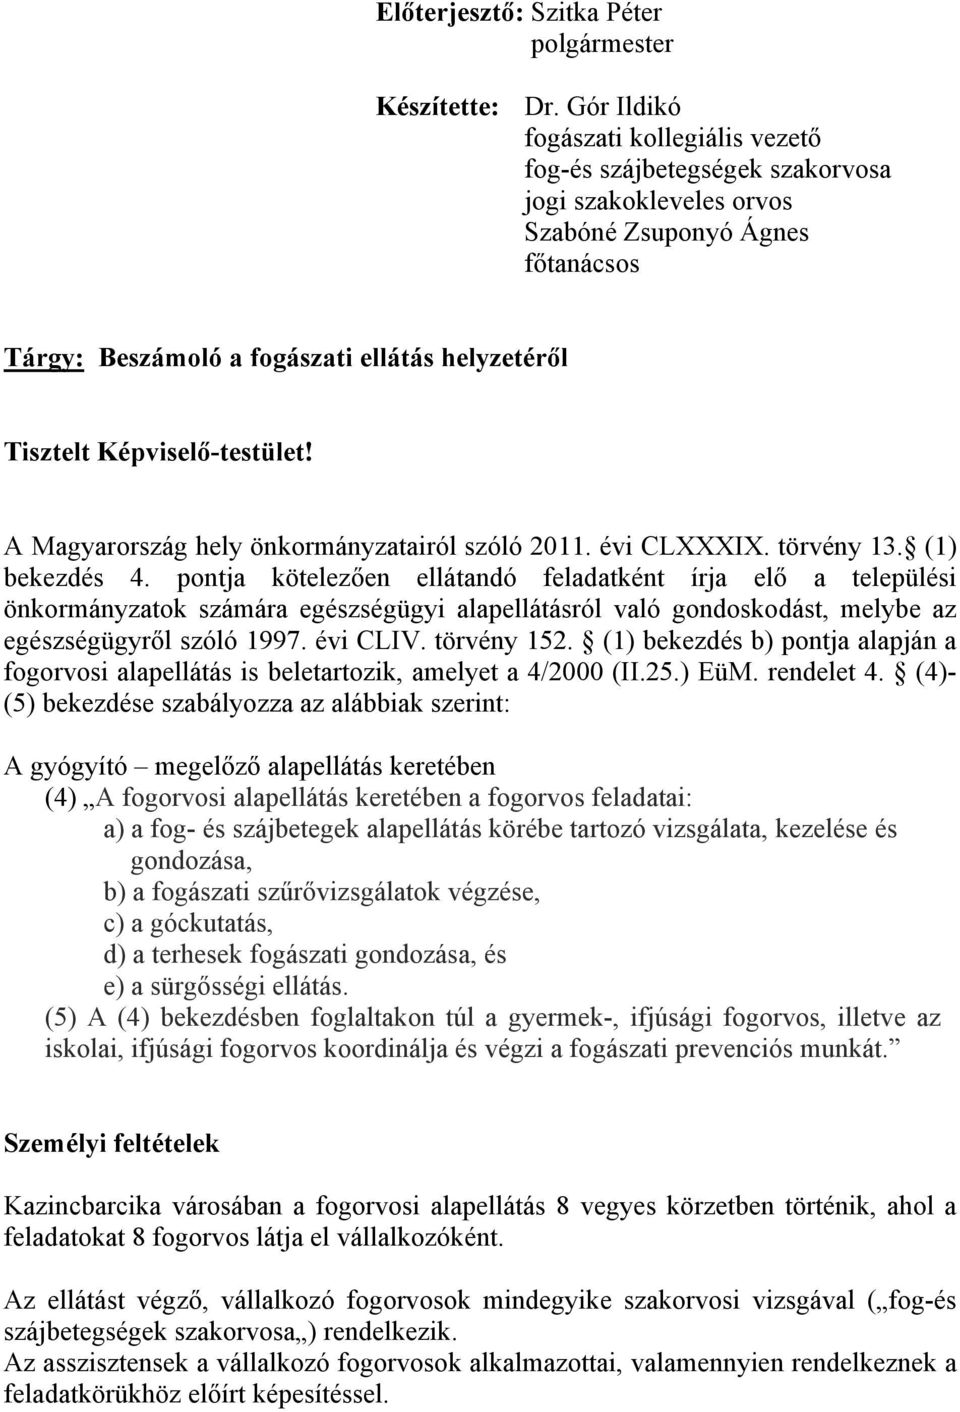 Képviselő-testület! A Magyarország hely önkormányzatairól szóló 2011. évi CLXXXIX. törvény 13. (1) bekezdés 4.